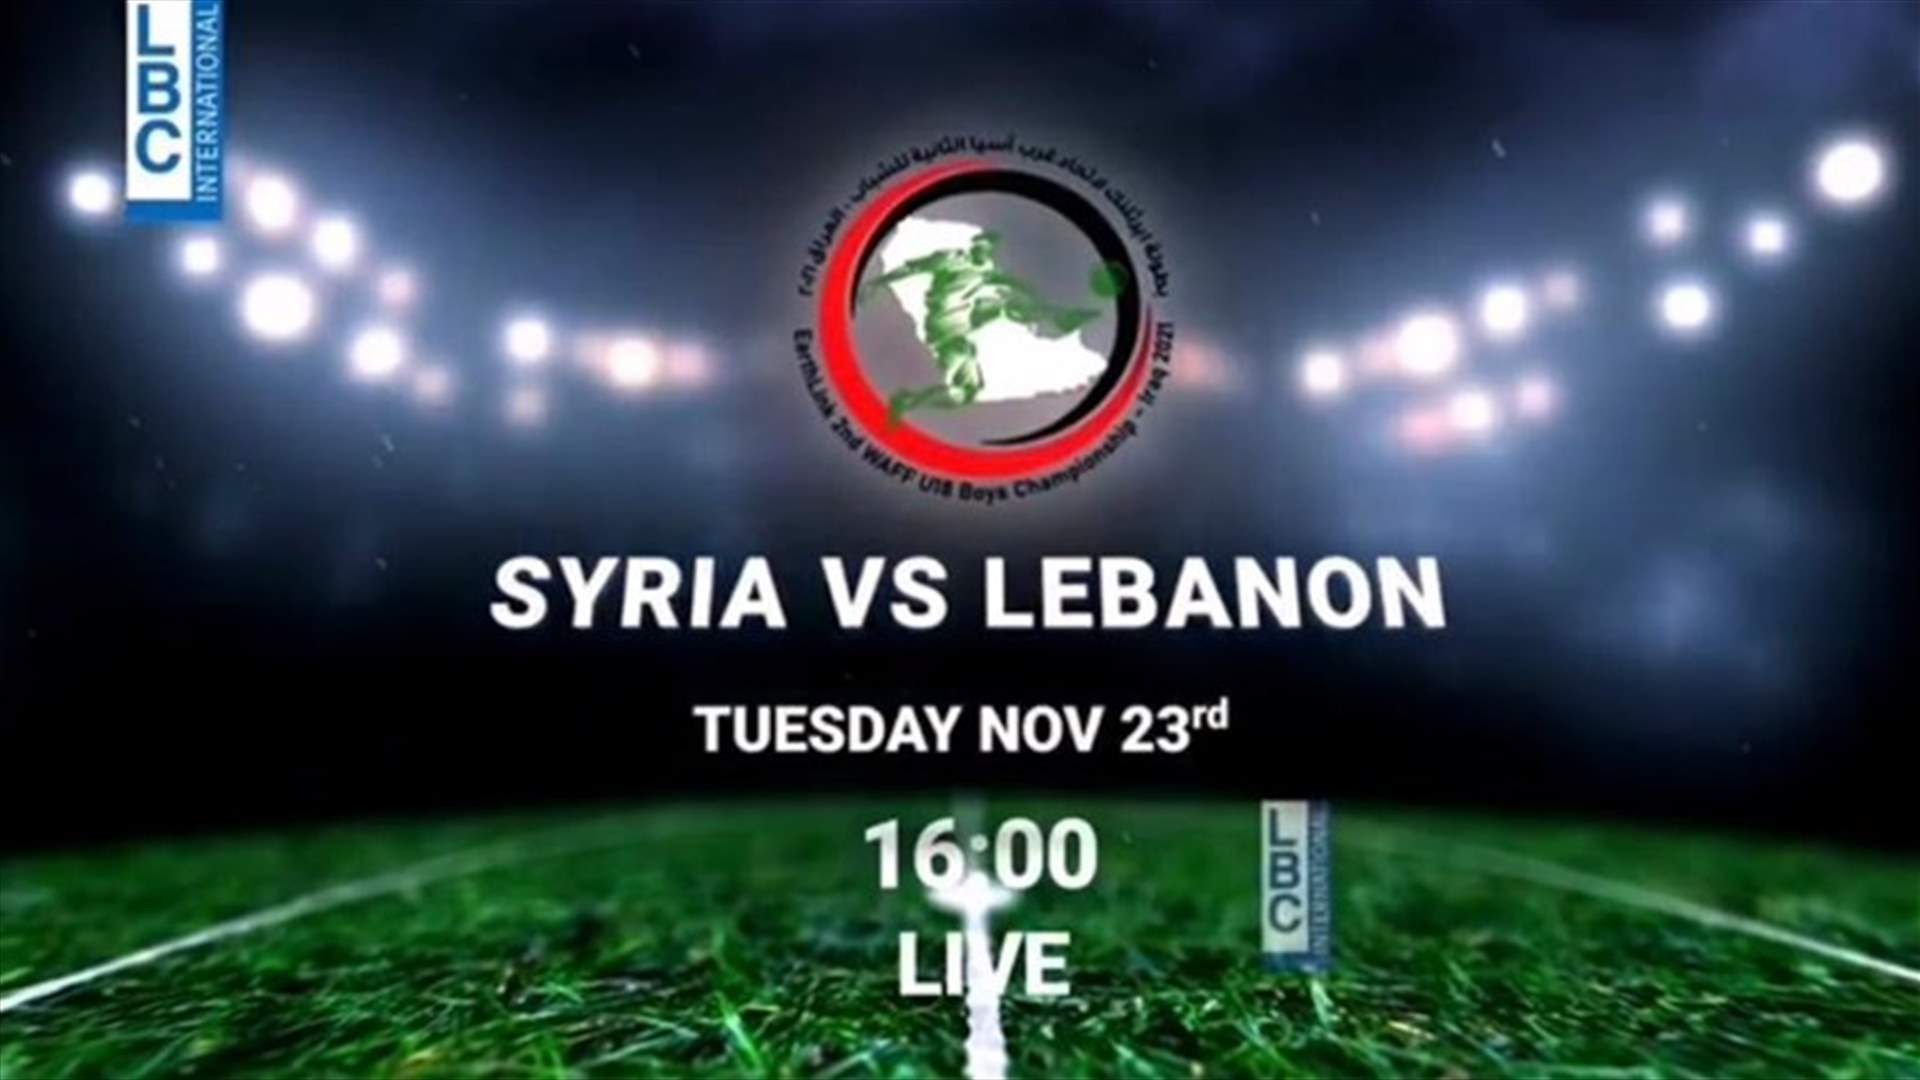 مباراة لبنان وسوريا ضمن بطولة ايرثلنك غرب آسيا لكرة القدم للشباب الثلاثاء عبر الـLBCI